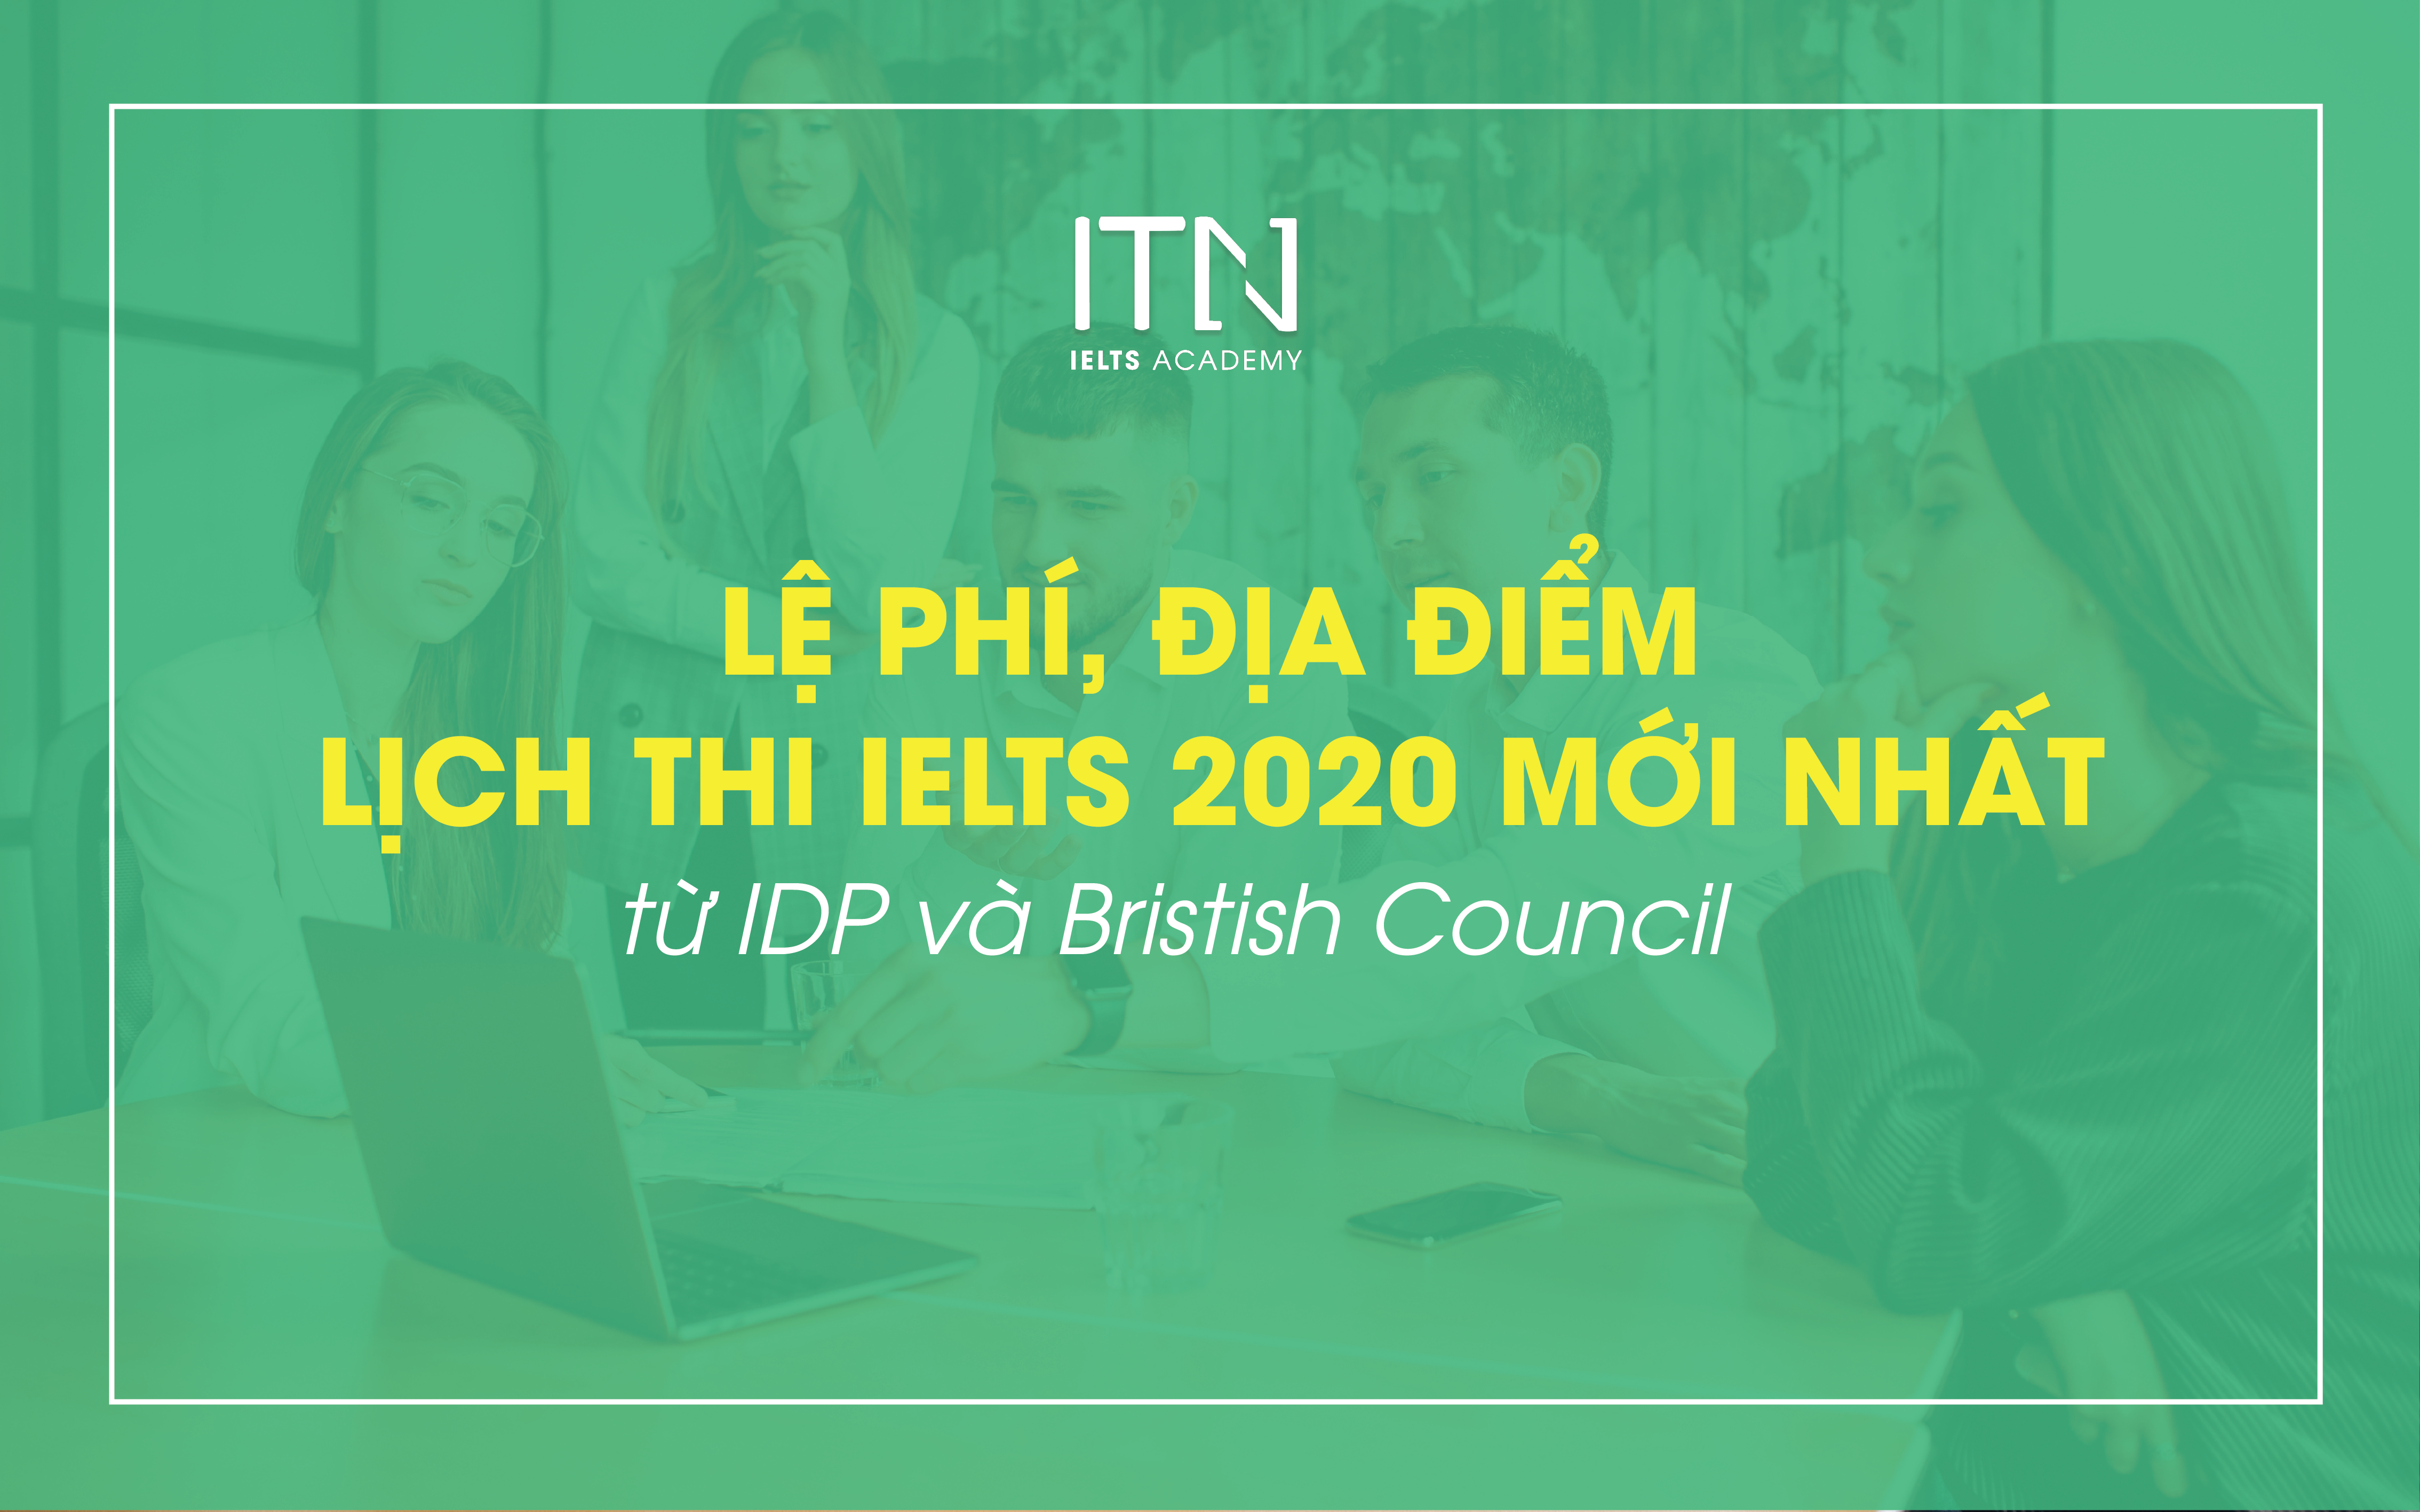 Lệ Phí, Địa Điểm Và Lịch Thi IELTS 2020 Mới Nhất Từ IDP Và British Council